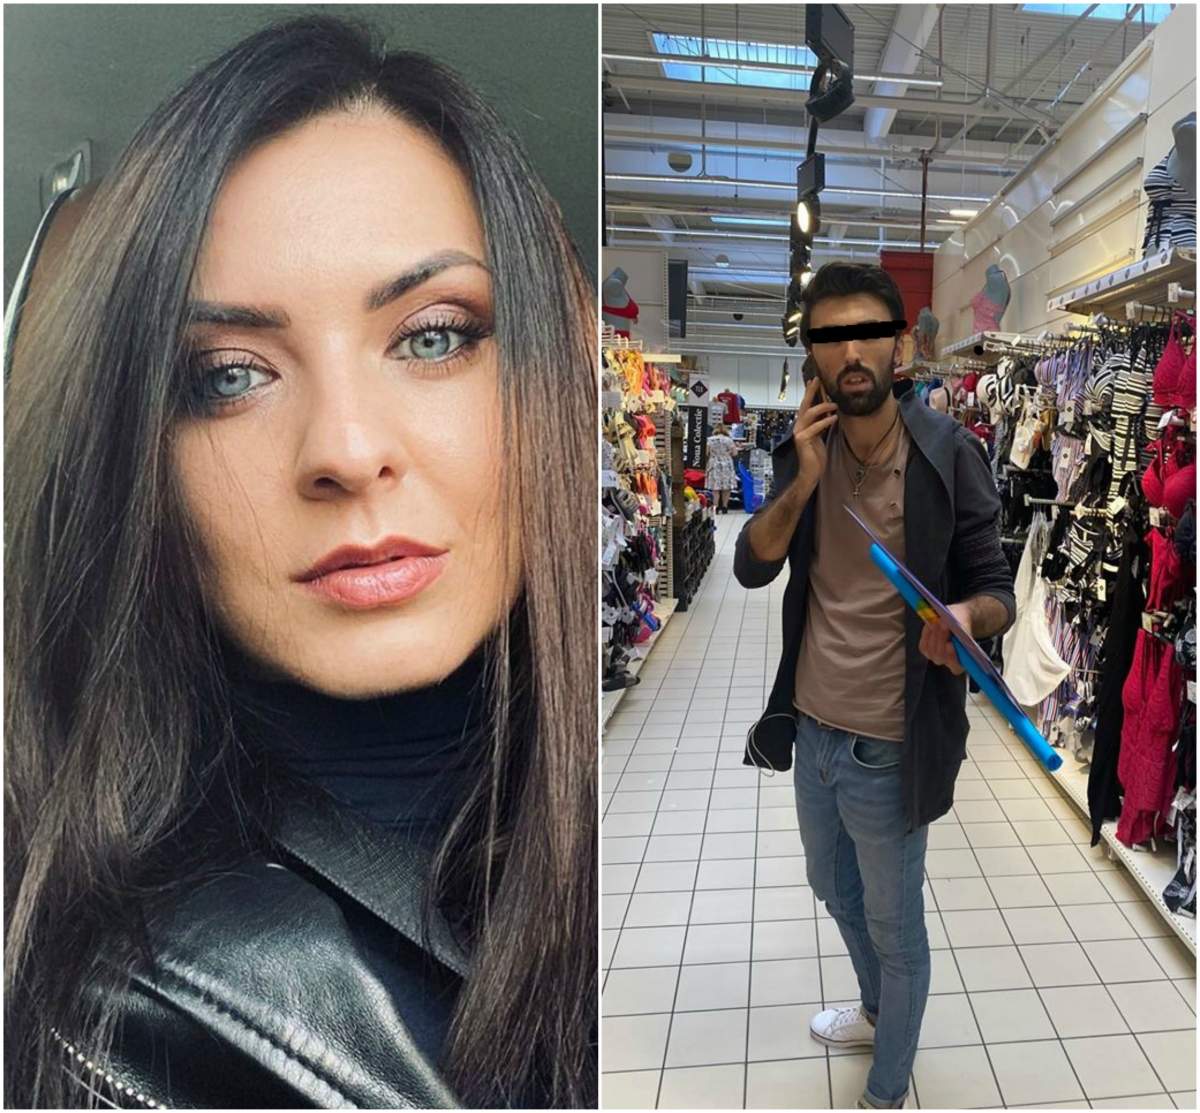 Tânără din București, agresată într-un supermarket. Victima face acum un apel public pentru a-l putea identifica pe bărbat: ”Am fost atât de speriată și panicată”